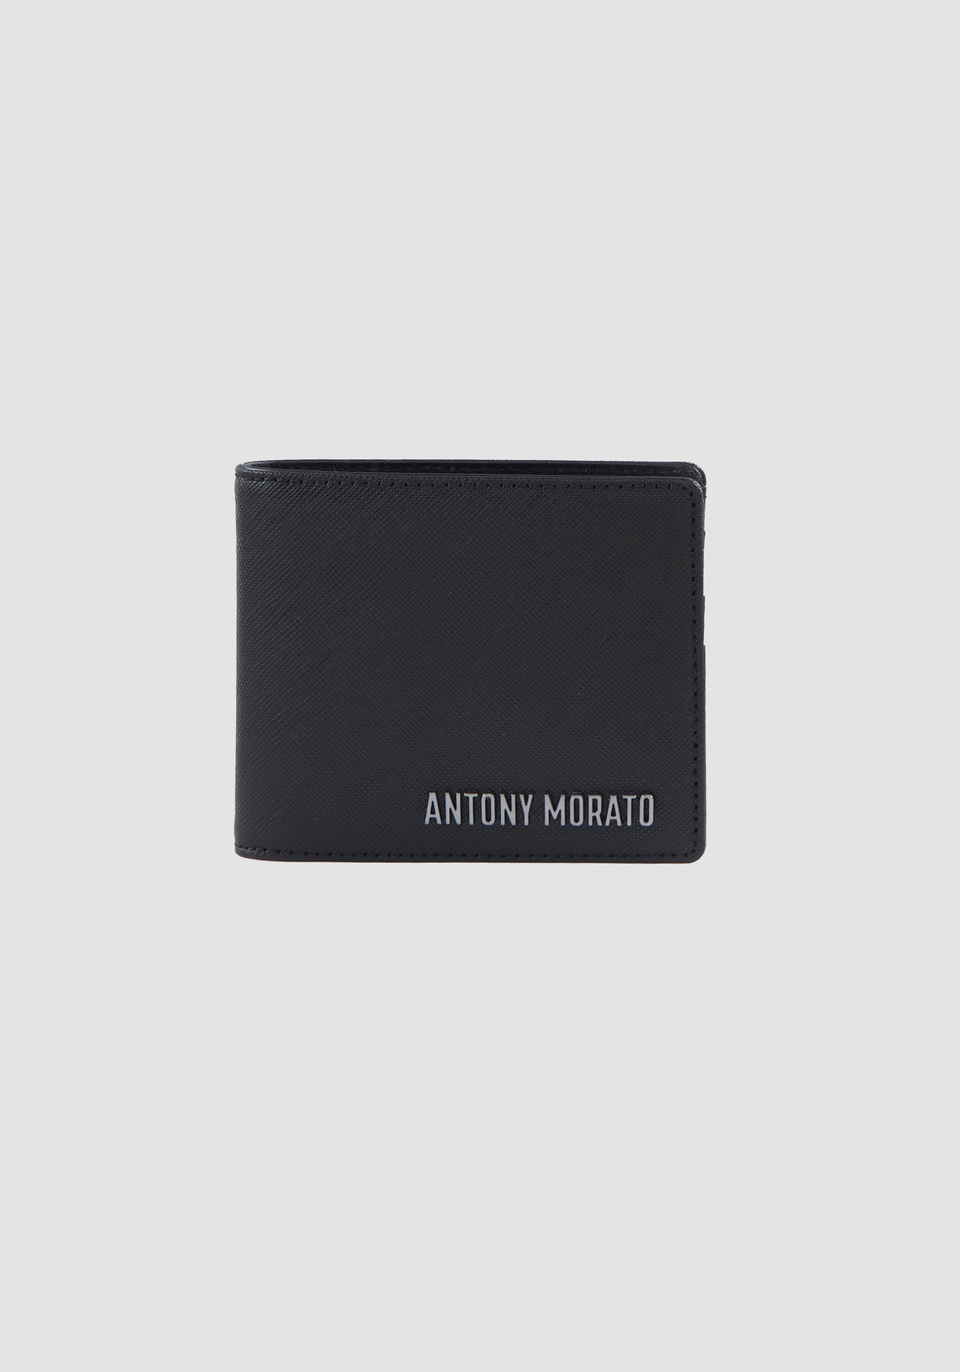 PORTAFOGLI CON LOGO METALLICO - Antony Morato Online Shop